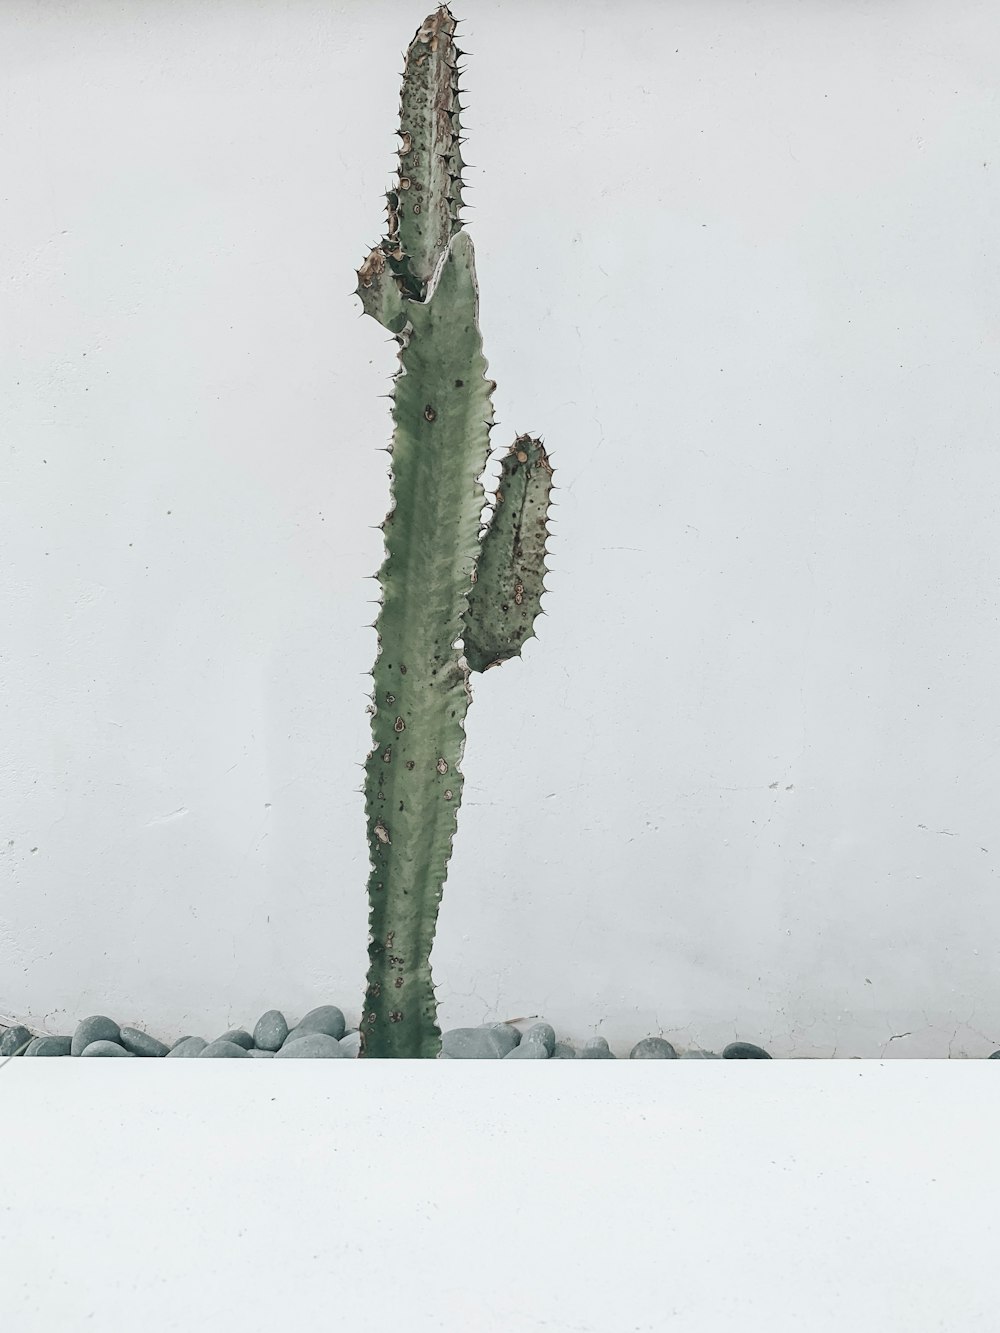 green cactus close-up photography